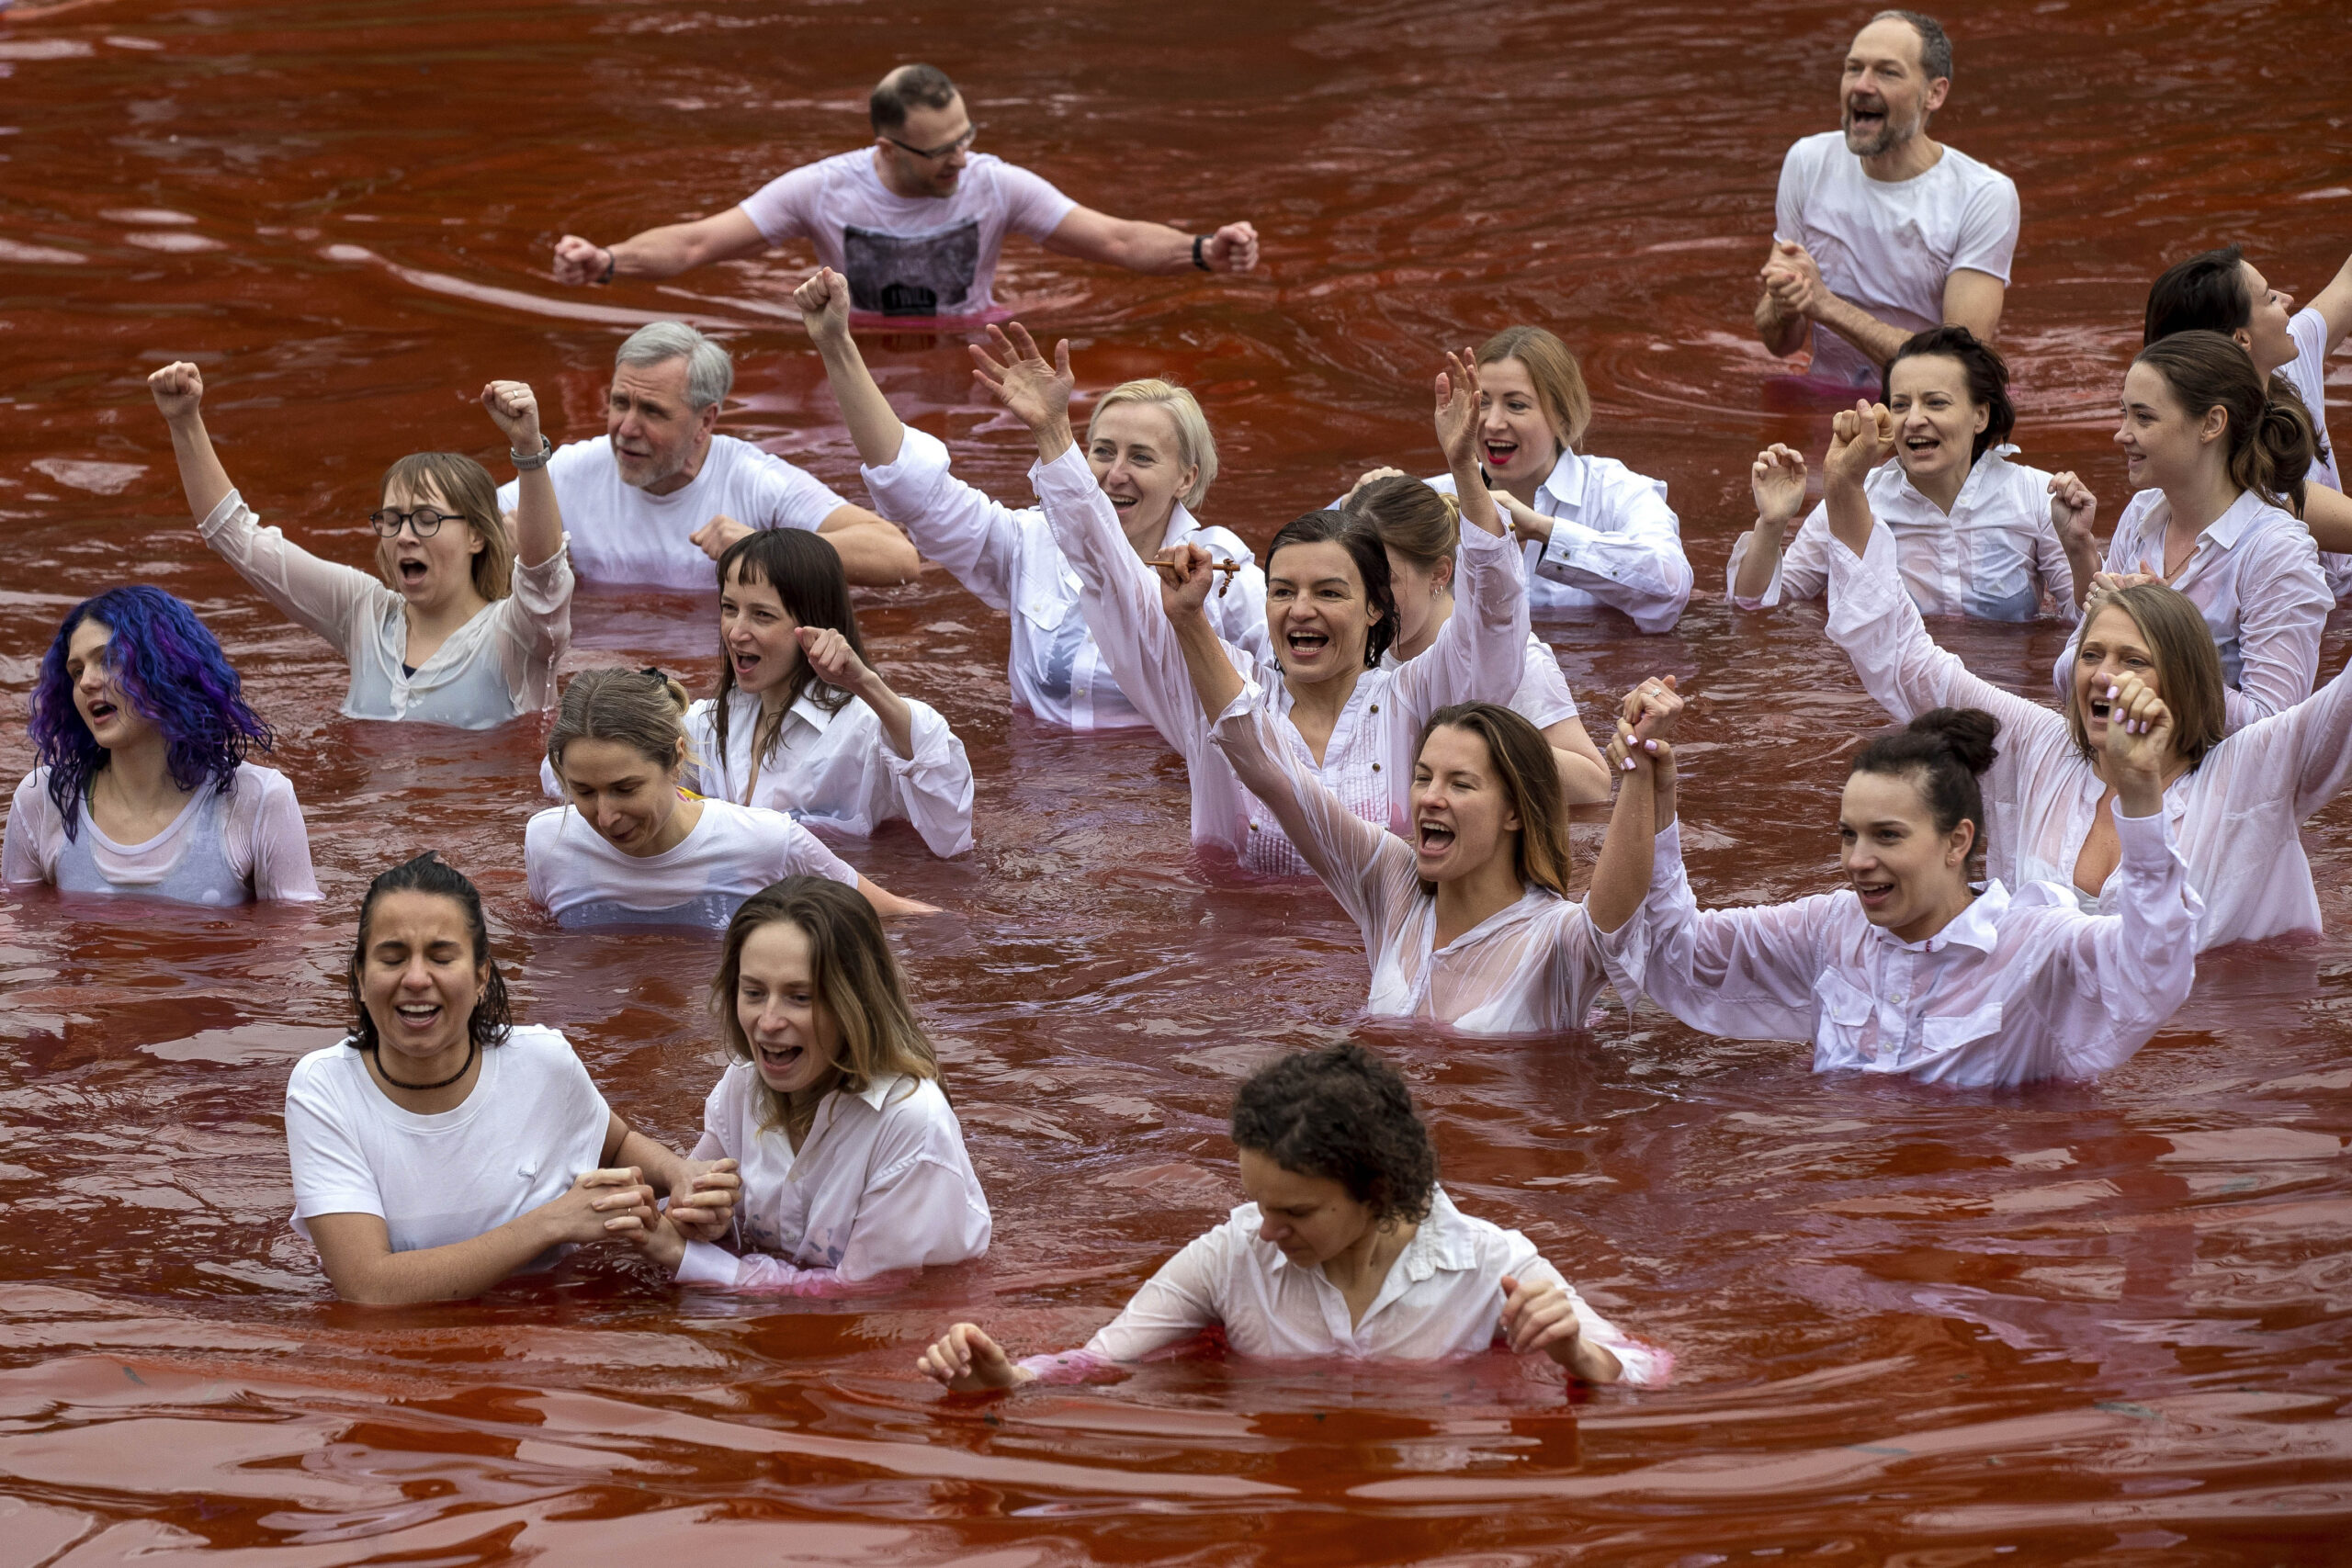 Pacifisti nuotano in un lago rosso sangue a Vilnius davanti Ambasciata Russia